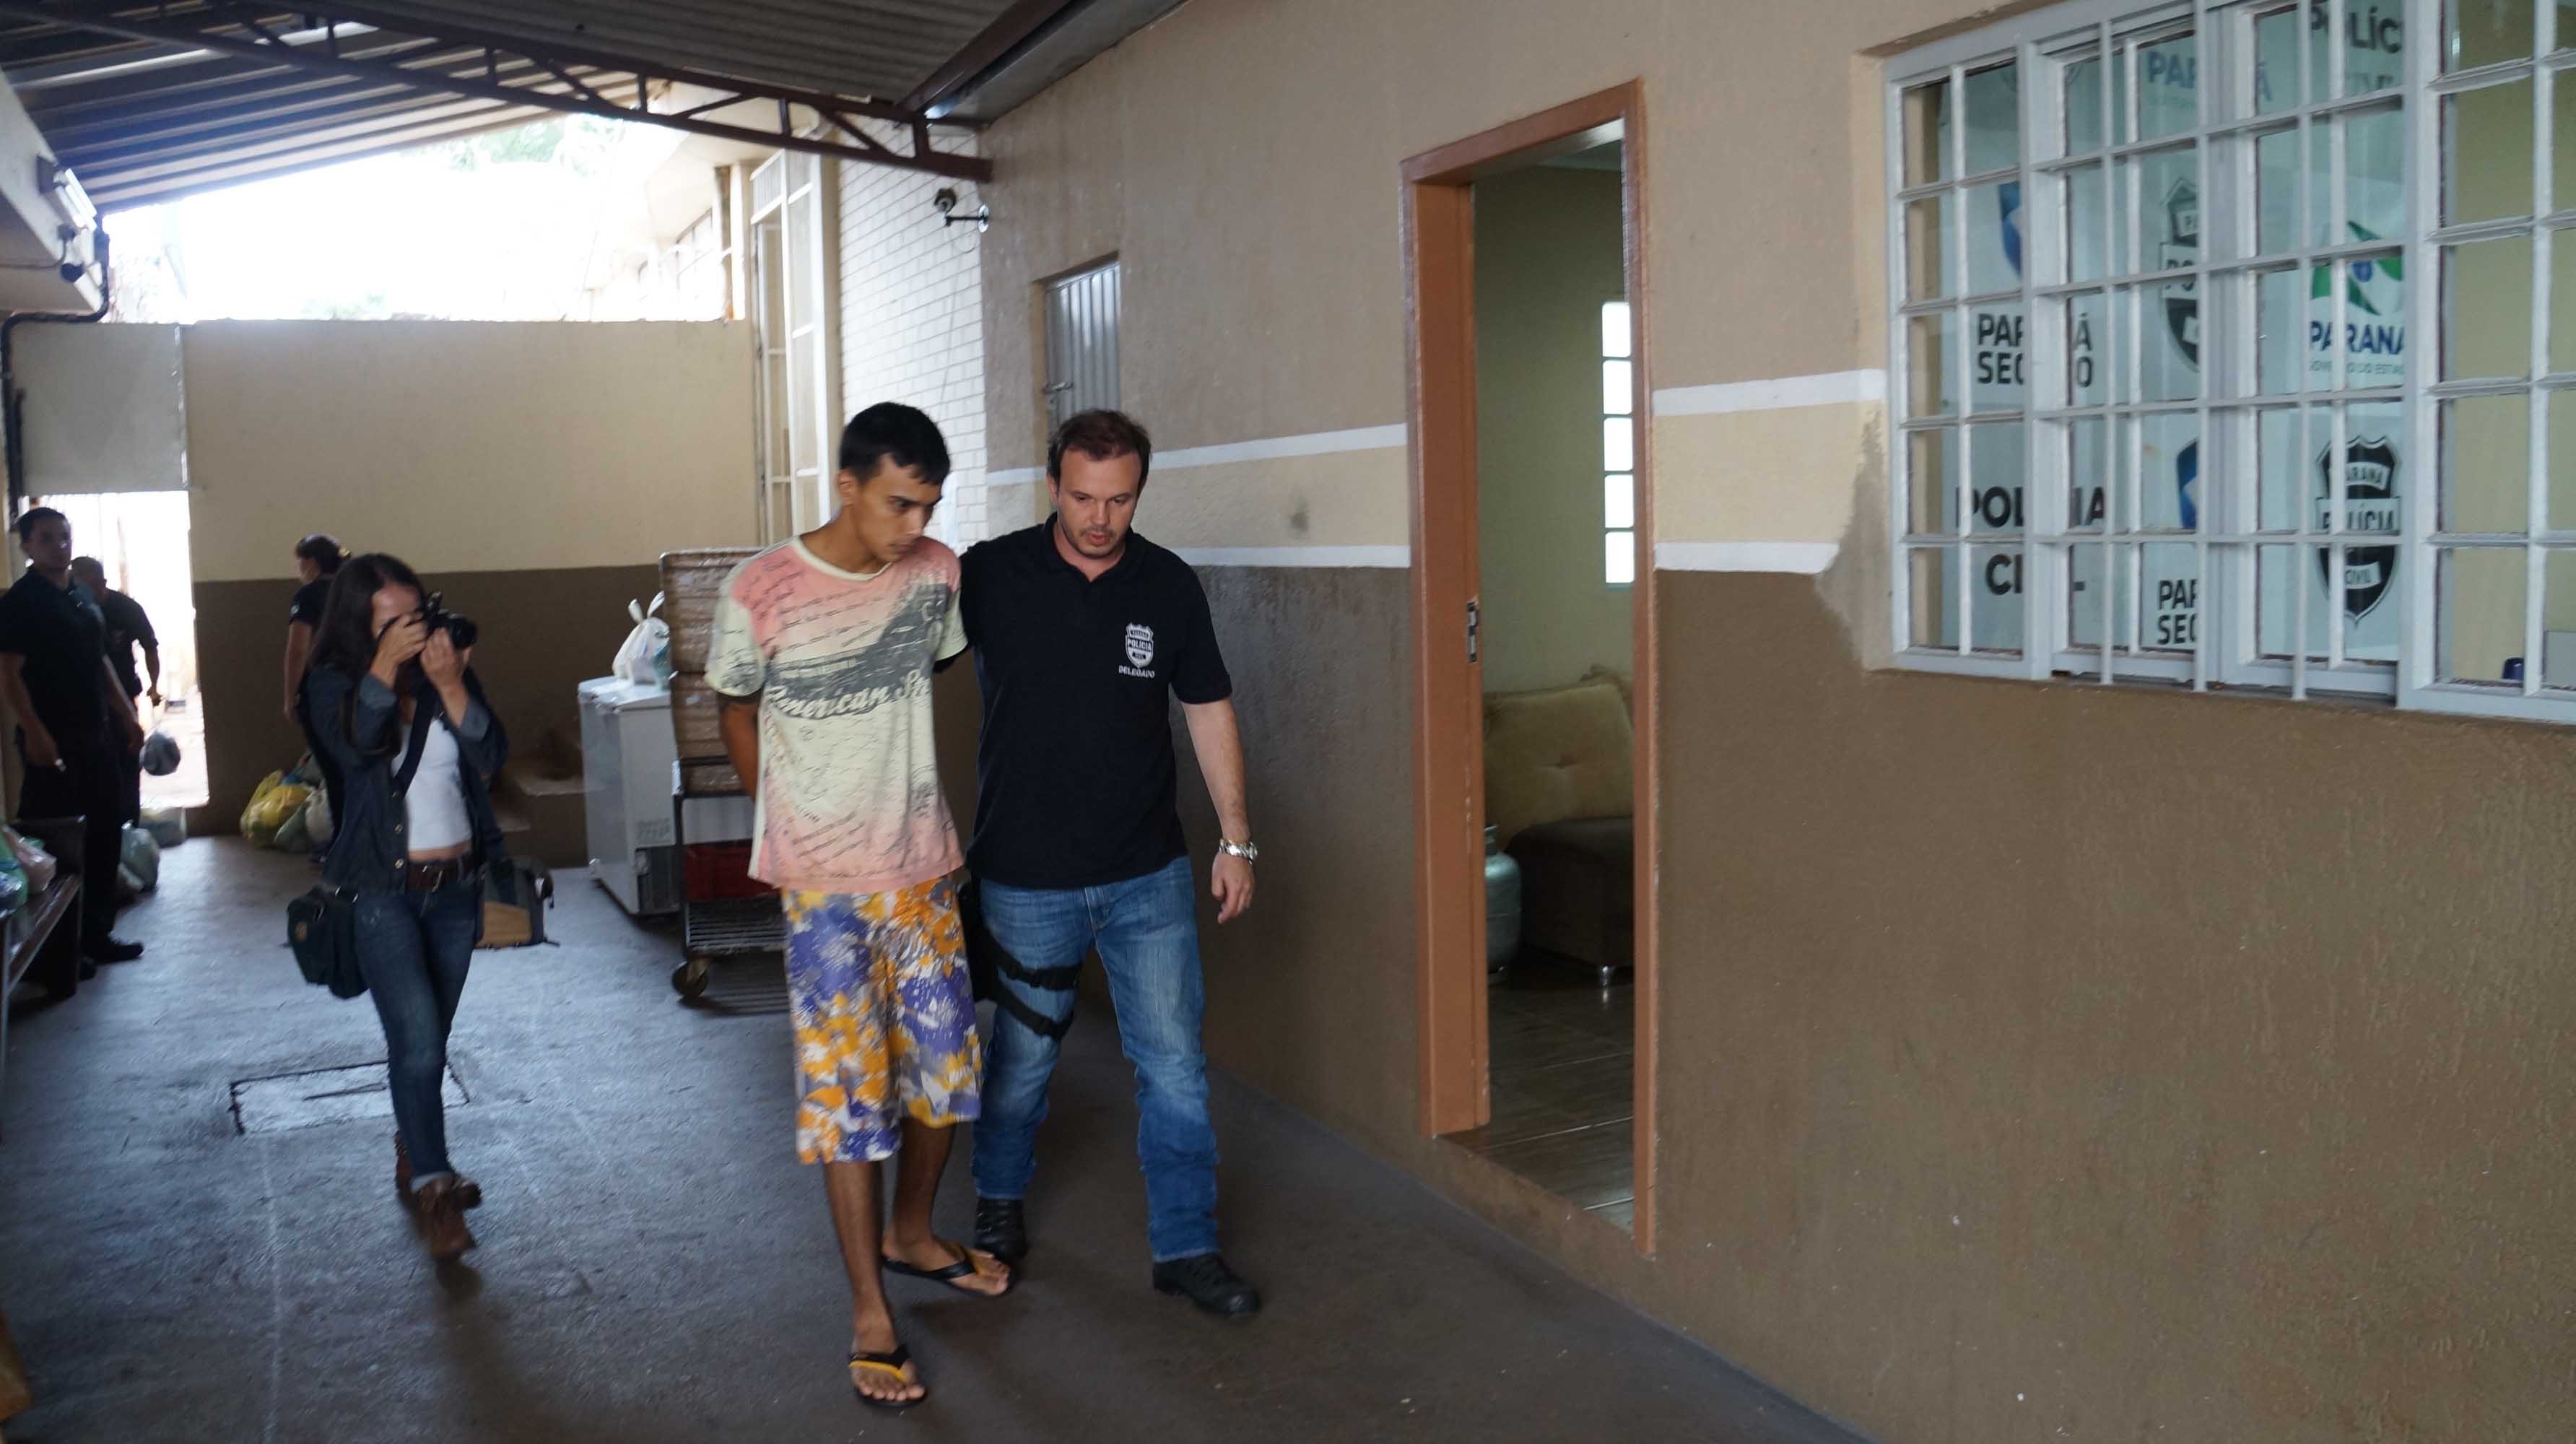 Há 12 dias a Polícia Civil encontrou na casa de Moraes mais de 1,6 quilos de maconha, 17 pinos de cocaína e uma balança de precisão - Foto: Ivan Maldonado